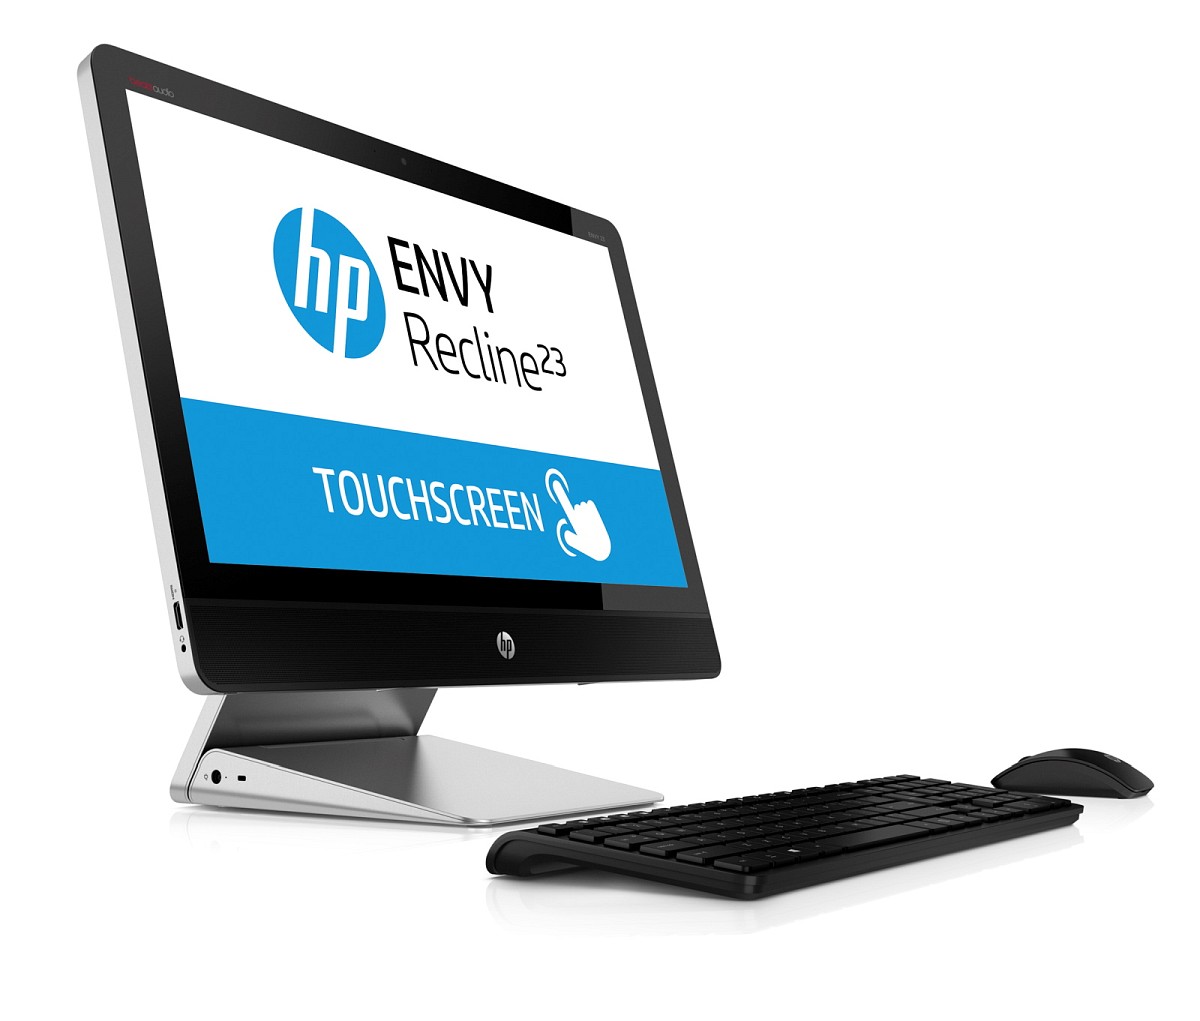 HP TouchSmart Envy Recline 23-k081ec (F6D98EA)